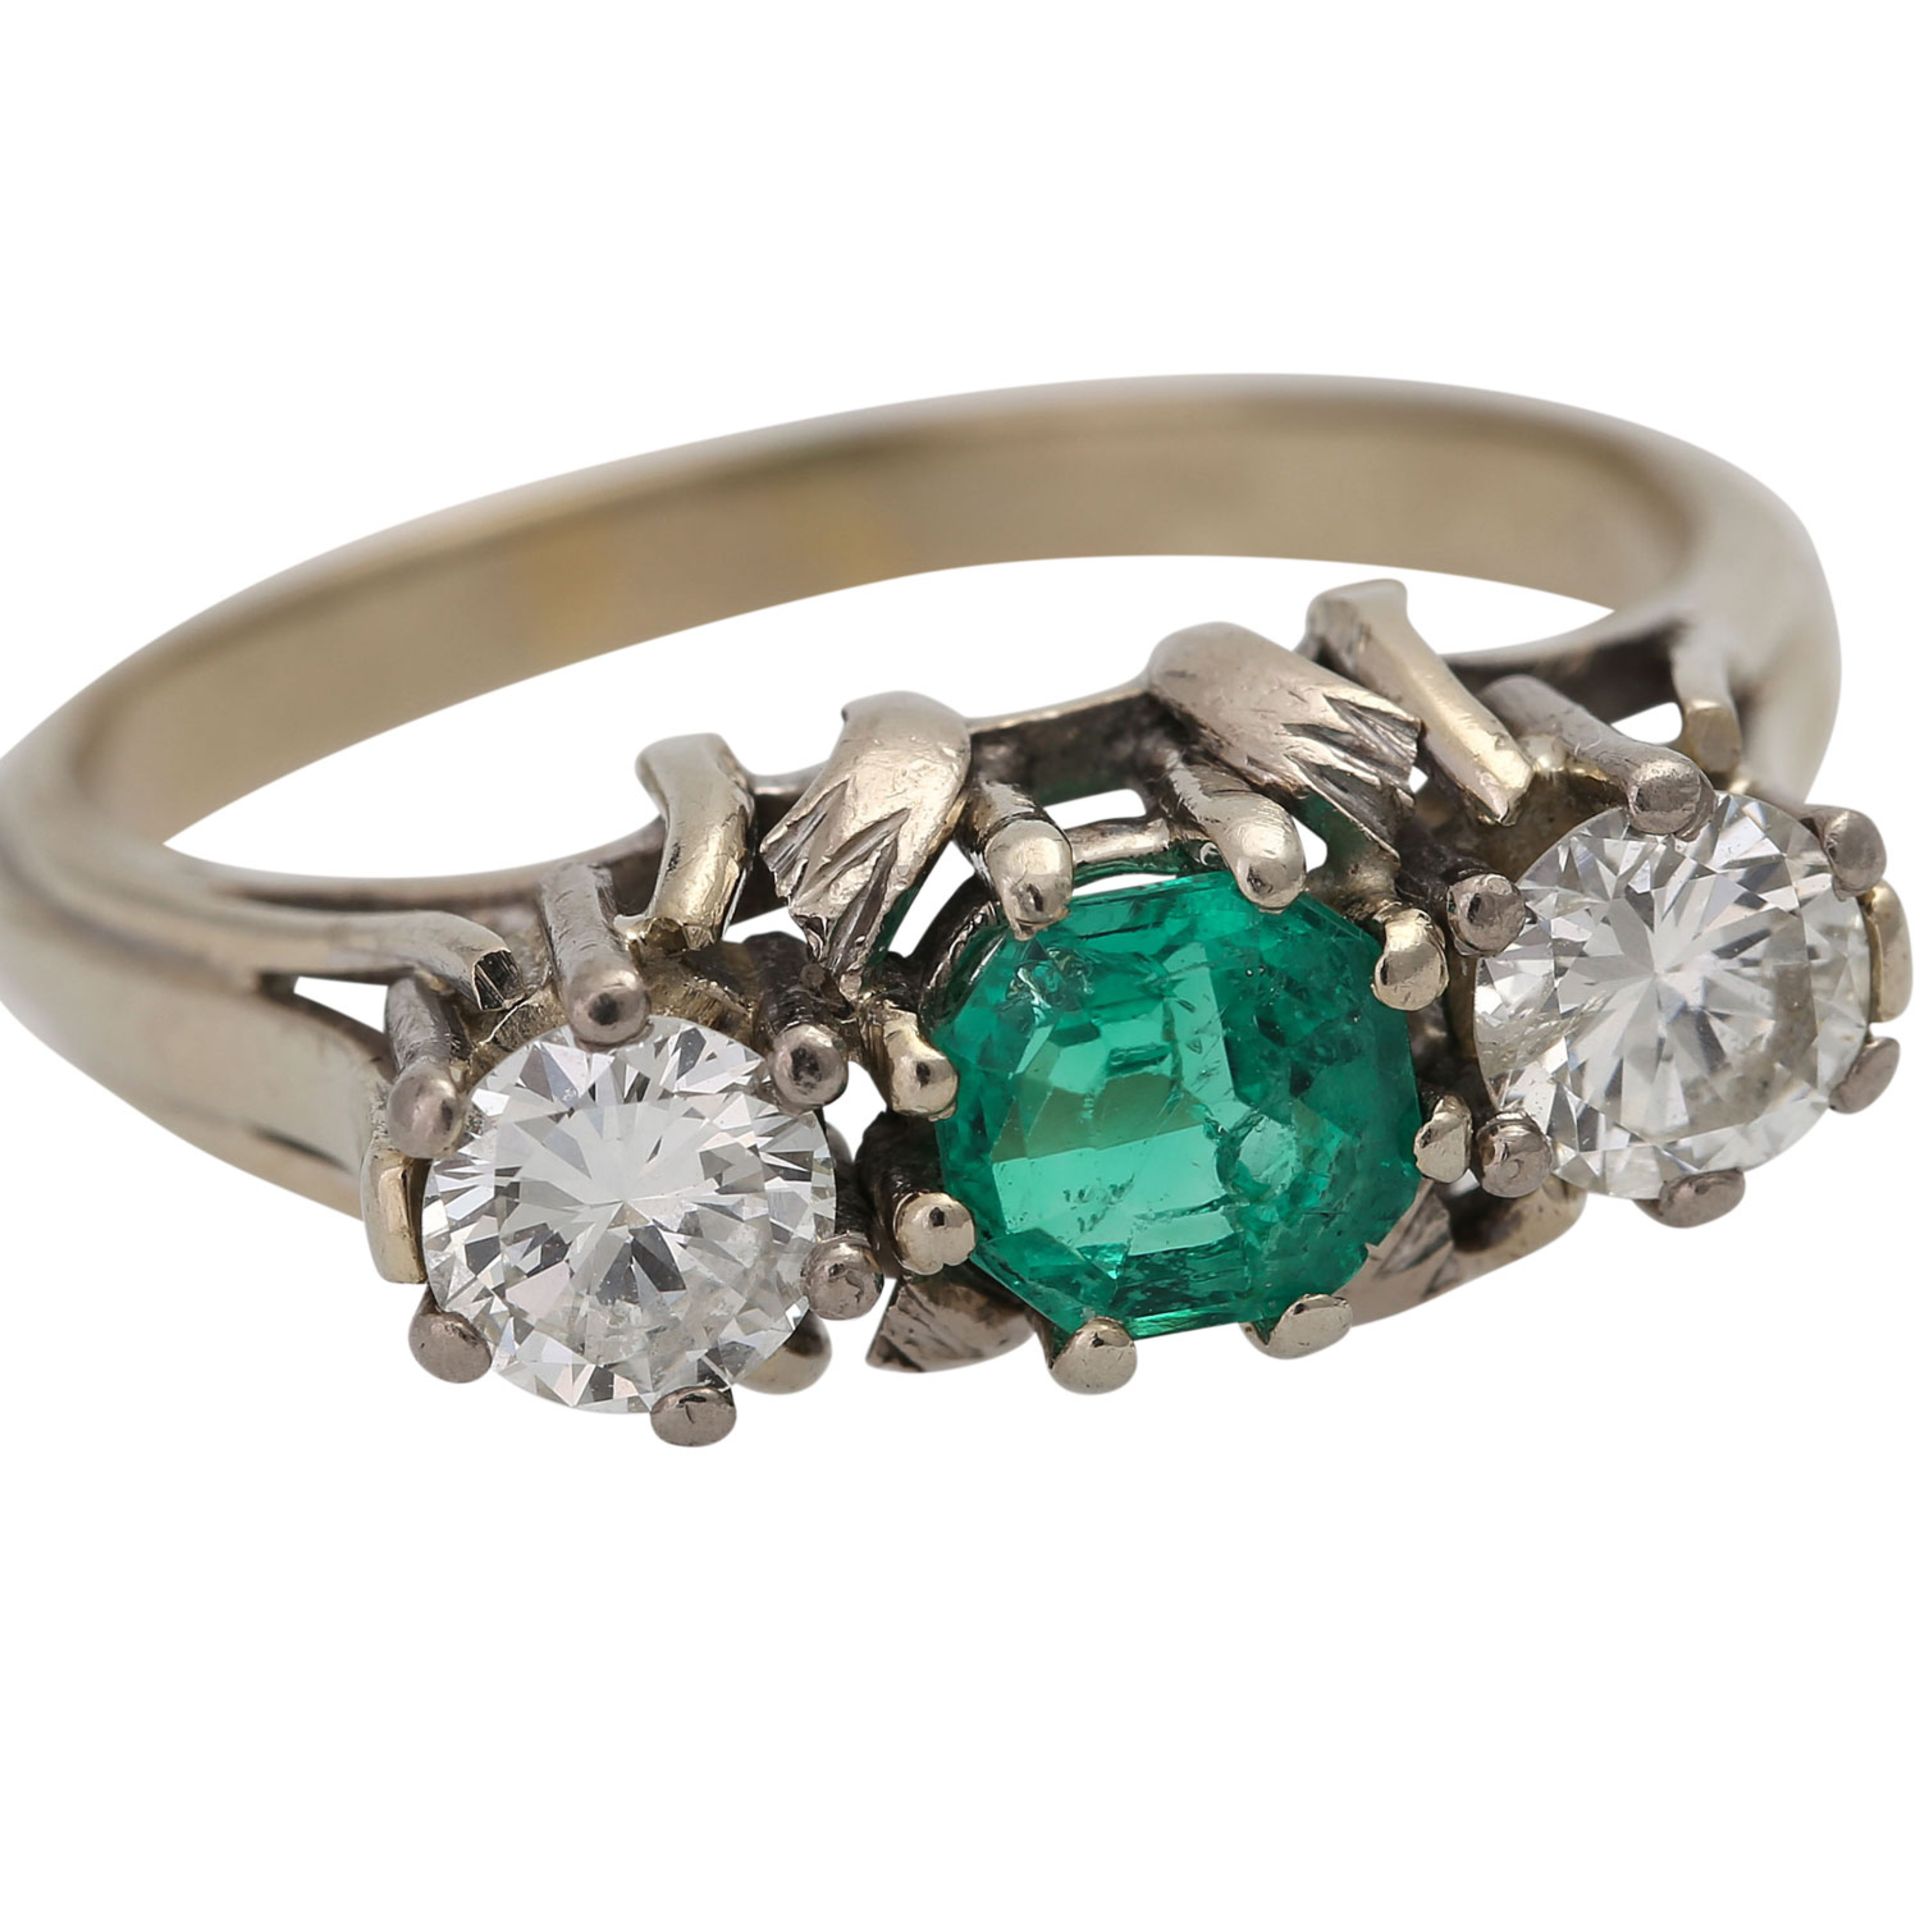 Ring mit einem Smaragd und 2 Diamanten,zus. ca. 0,6 ct, WEISS- LGW (H-J)/ SI-P1. WG 14K, RW: 58, 20. - Bild 5 aus 5